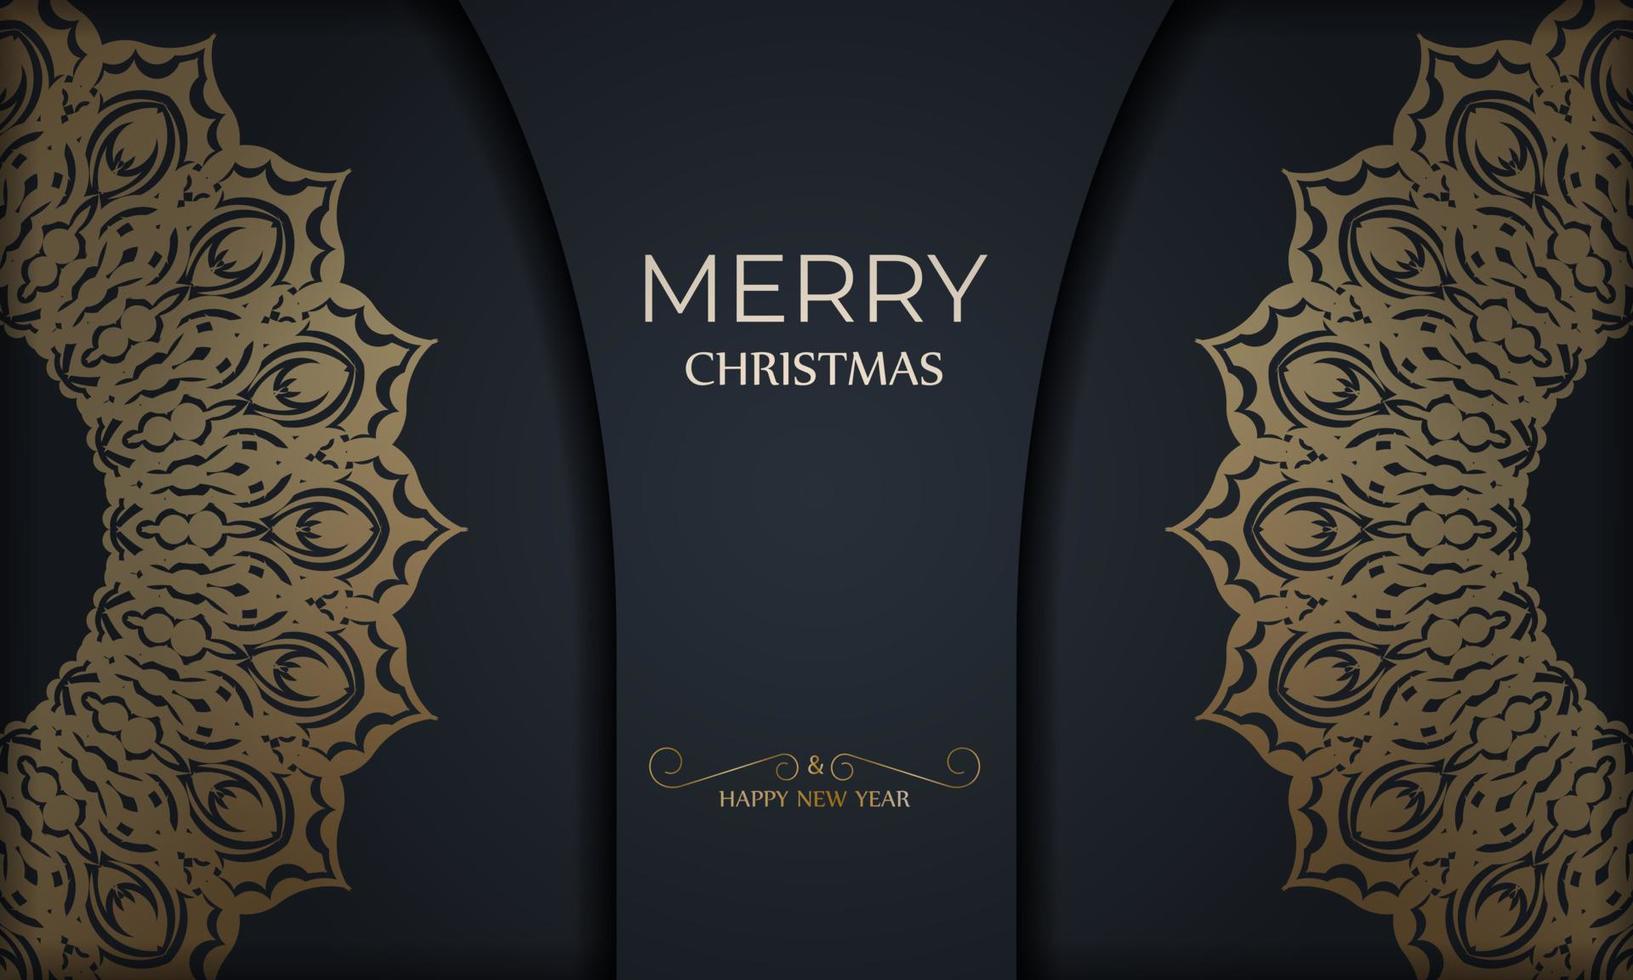 vrolijk Kerstmis en gelukkig nieuw jaar groet brochure sjabloon in donker blauw kleur met wijnoogst goud patroon vector